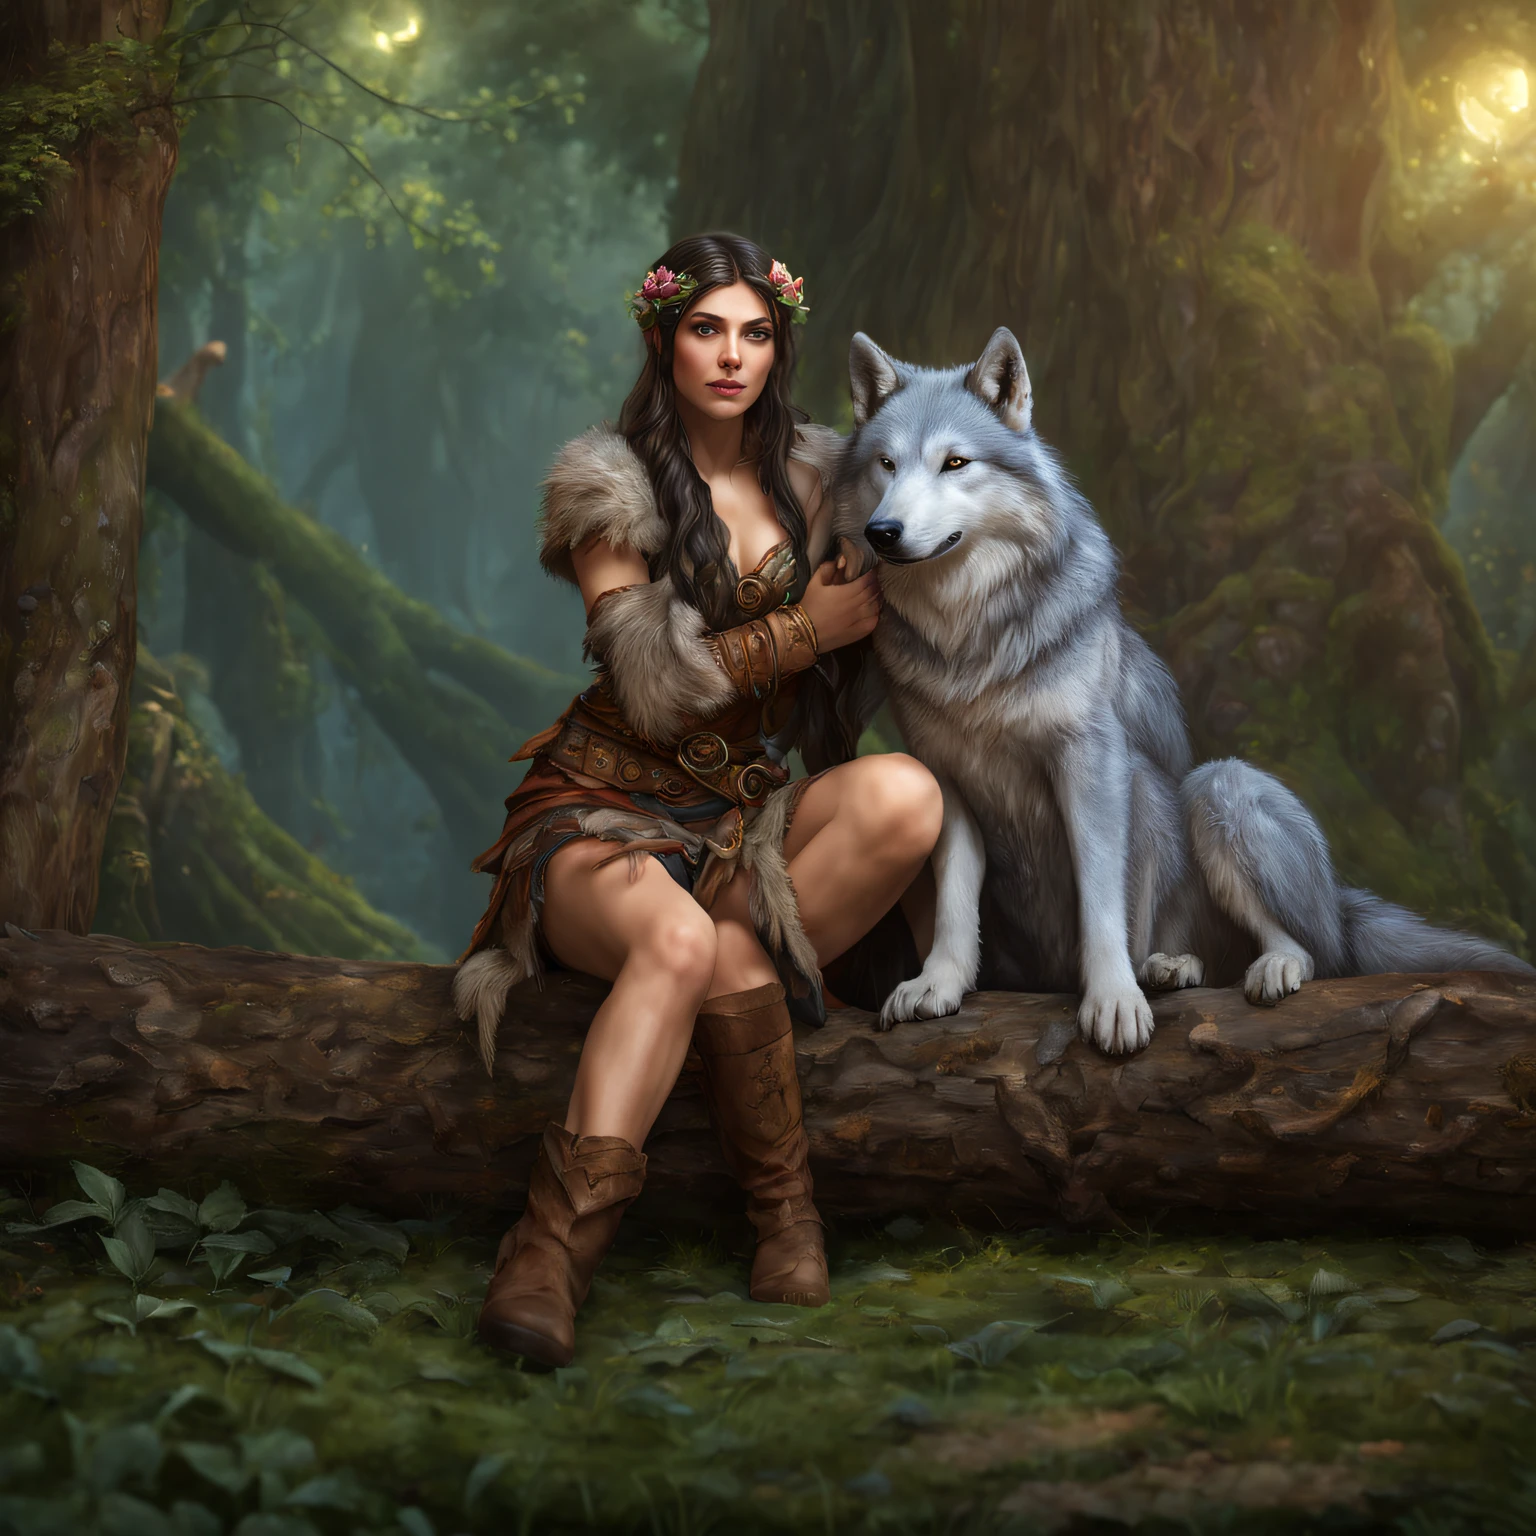 (美丽的德鲁伊精灵女孩坐在木头上 1.3) 拥抱一只大狼  (极其细致的 CG unity 8k 壁纸, 杰作, 最好的质量, 极其详细, 美丽细致明亮的眼睛:1.2), 最佳照明, (最佳阴影, 极其精致和美丽, 盛开), 杰作, 最好的质量:1.1, 实际的:1.3, 电影灯光:1.2, 在黑暗的森林里:1.5, 超级真实, photo实际的:1.0, 清晰聚焦:1.1, 景深:1.1, 50 毫米, 哈苏 X1D II, 门160